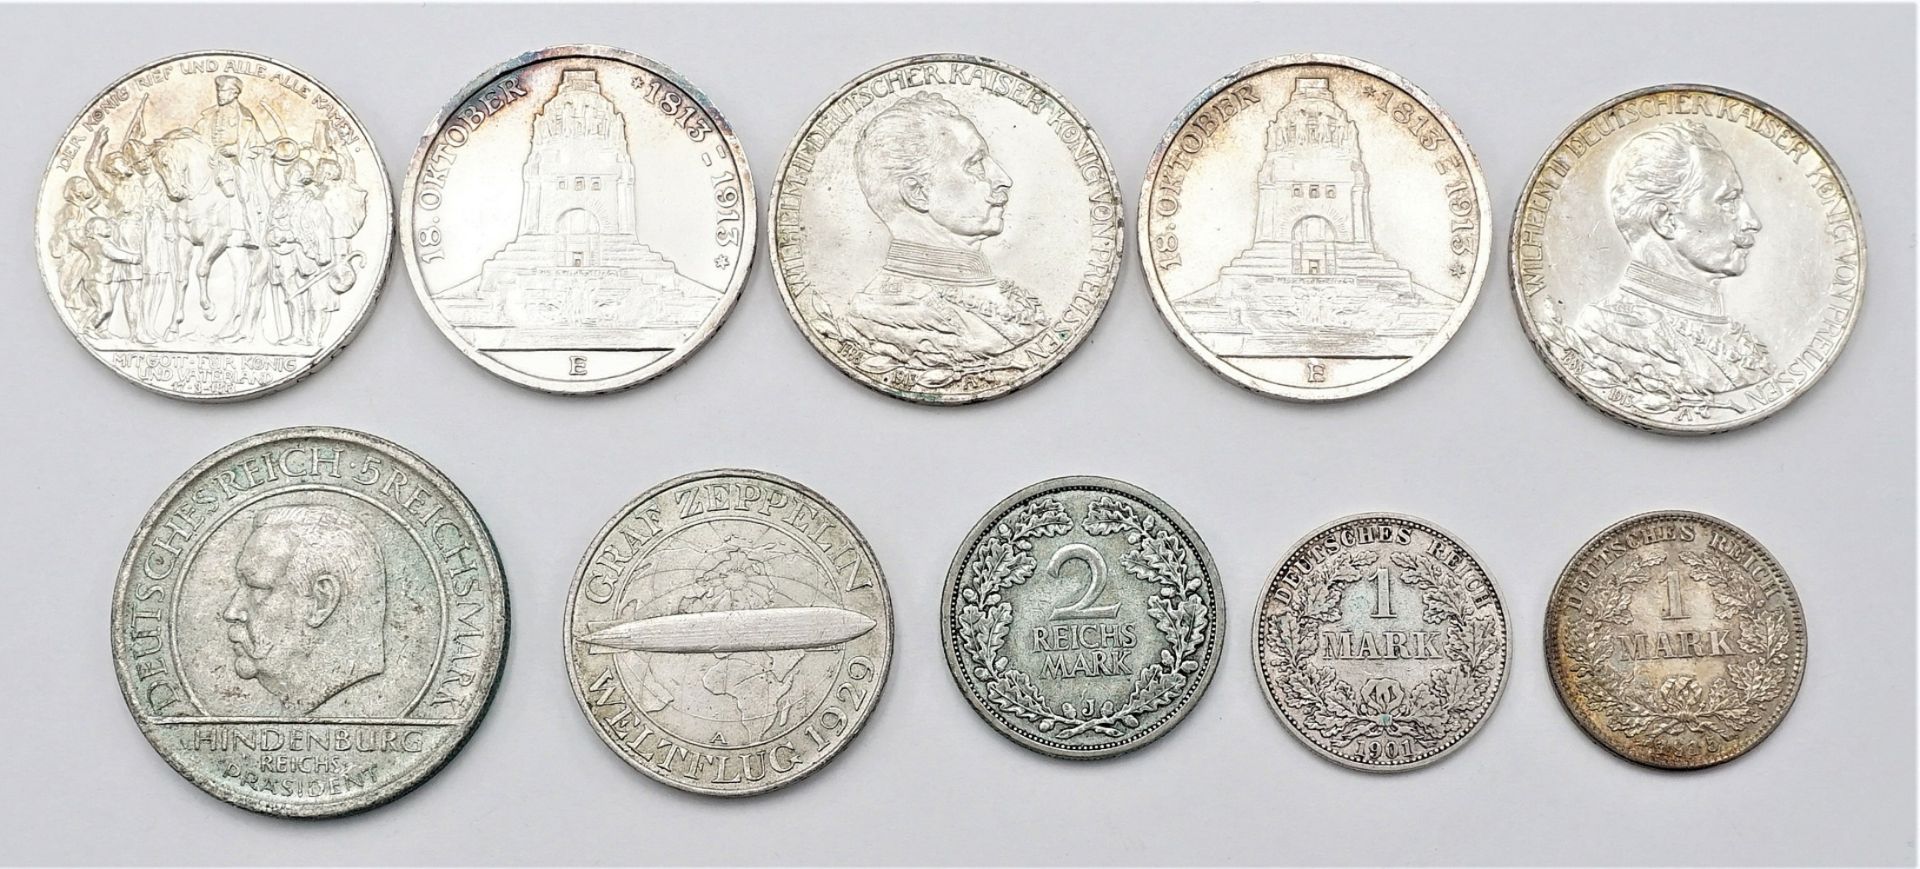 Ten coins Kaiserreich and Reichsmark